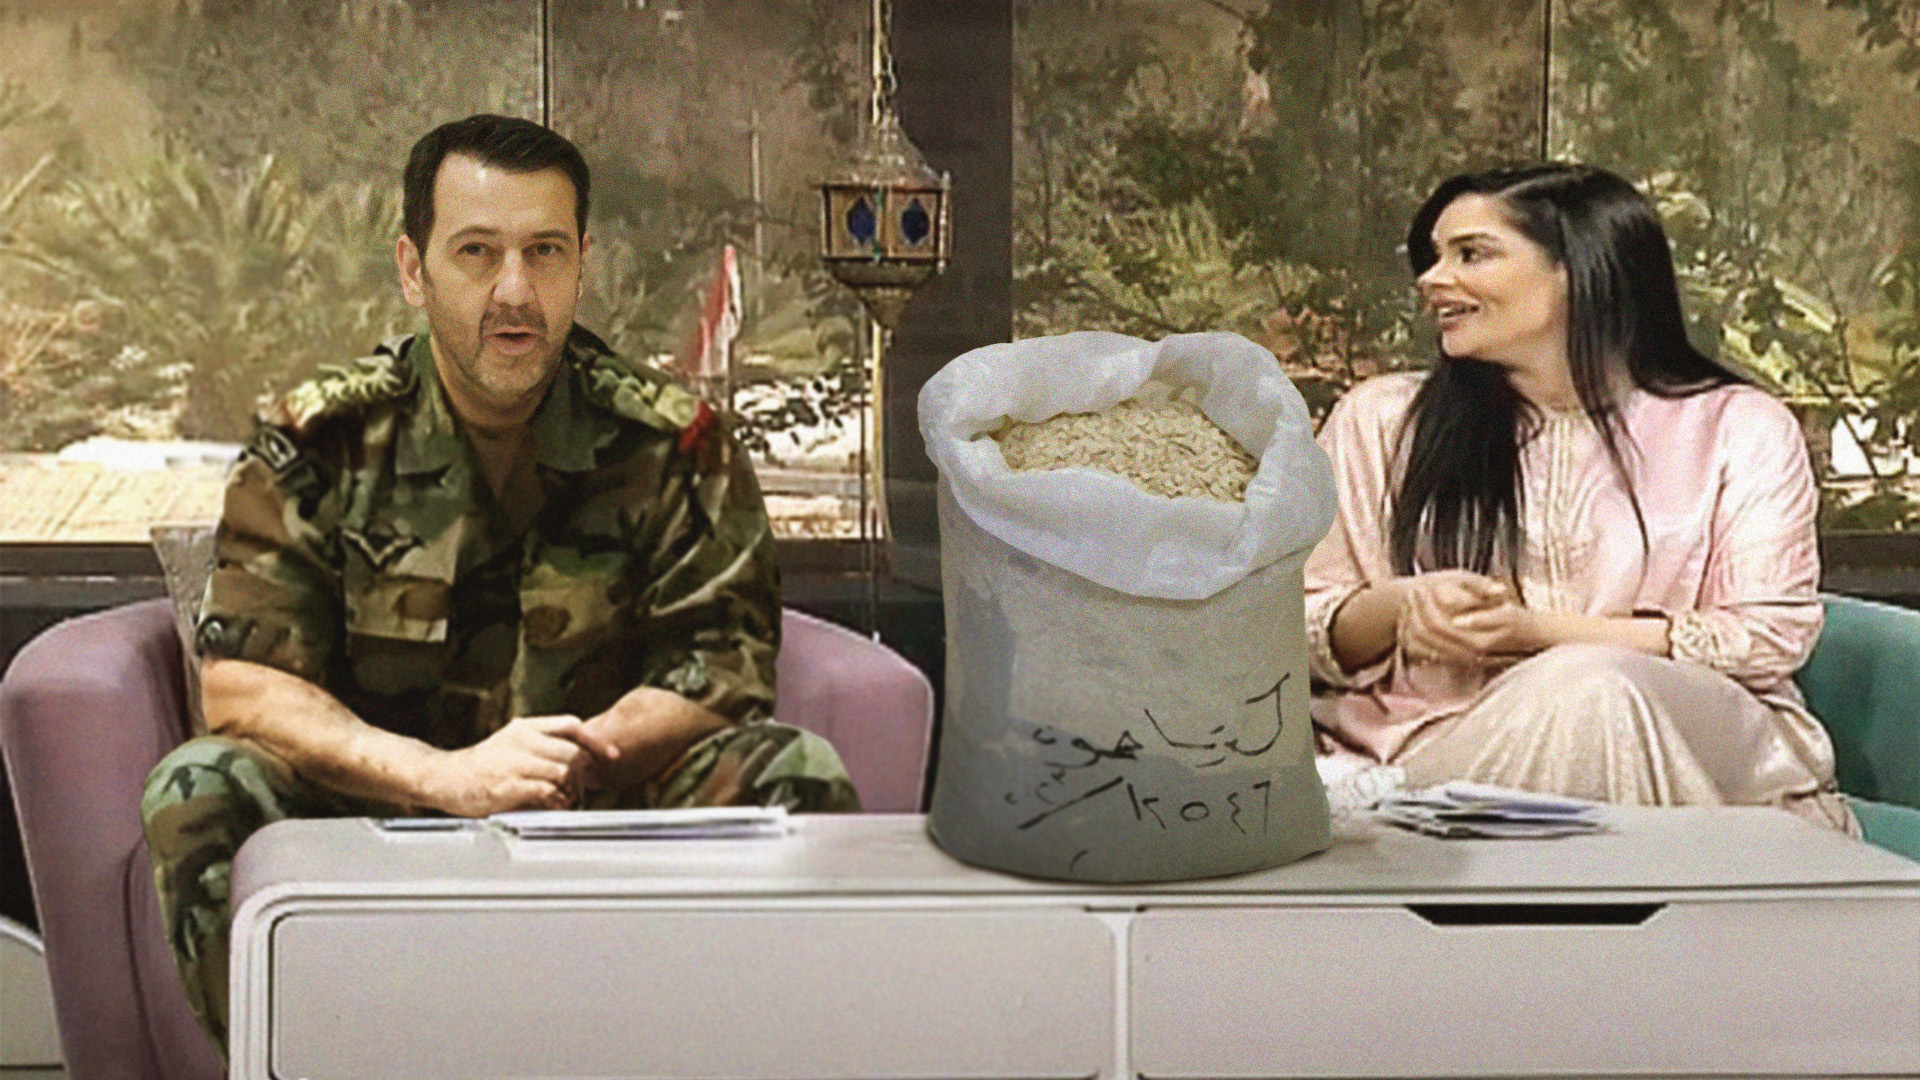 صورة برنامج صباح الخير سورية يستضيف ماهر الأسد ليتحدث عن مشروعه المحلي